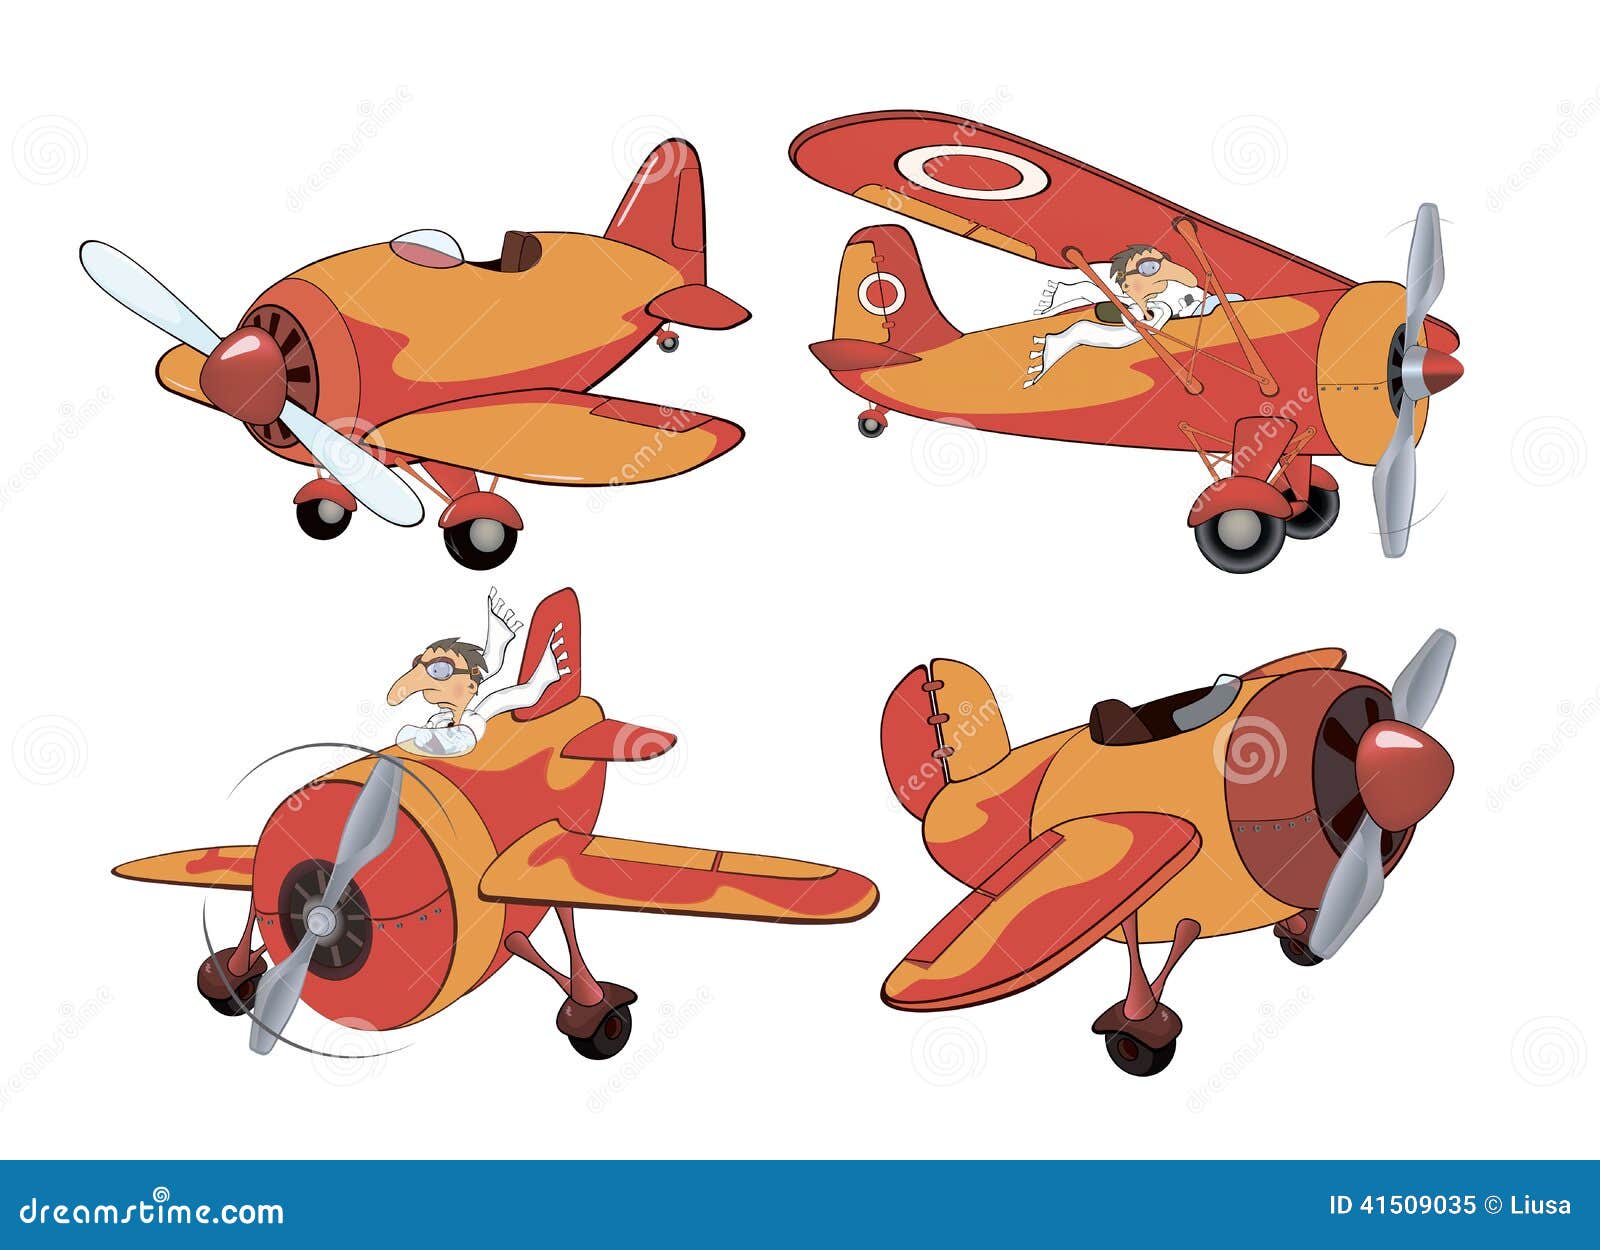 Cartoon War Planes Stock Illustrations – 77 Cartoon War Planes Stock  Illustrations, Vectors & Clipart - Dreamstime